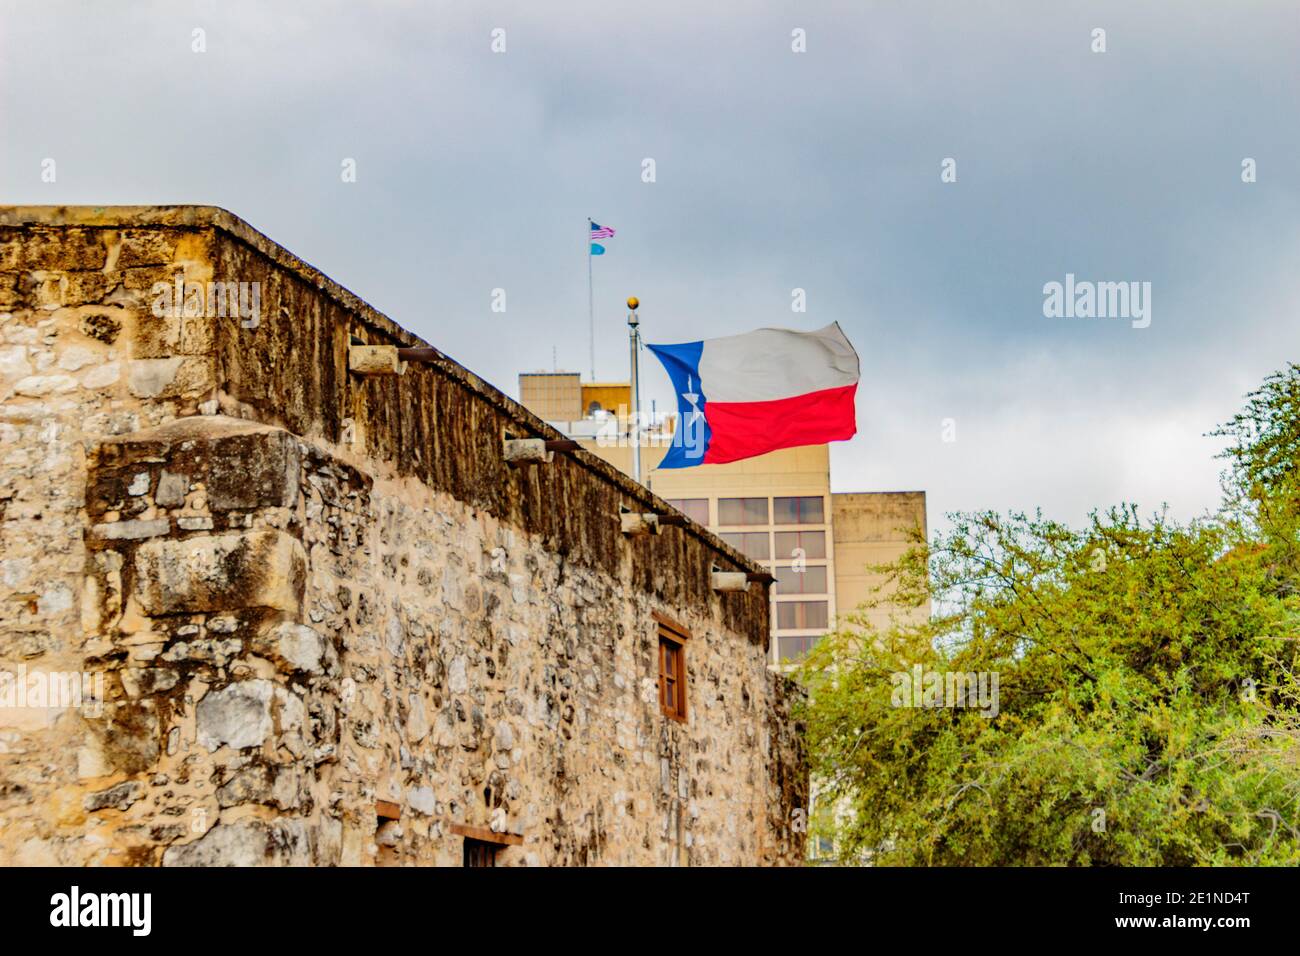 An Antonio, Texas, États-Unis - 29 mars 2018 : le drapeau du Texas survole l'Alamo à San Antonio et près de la promenade au bord de la rivière. Banque D'Images